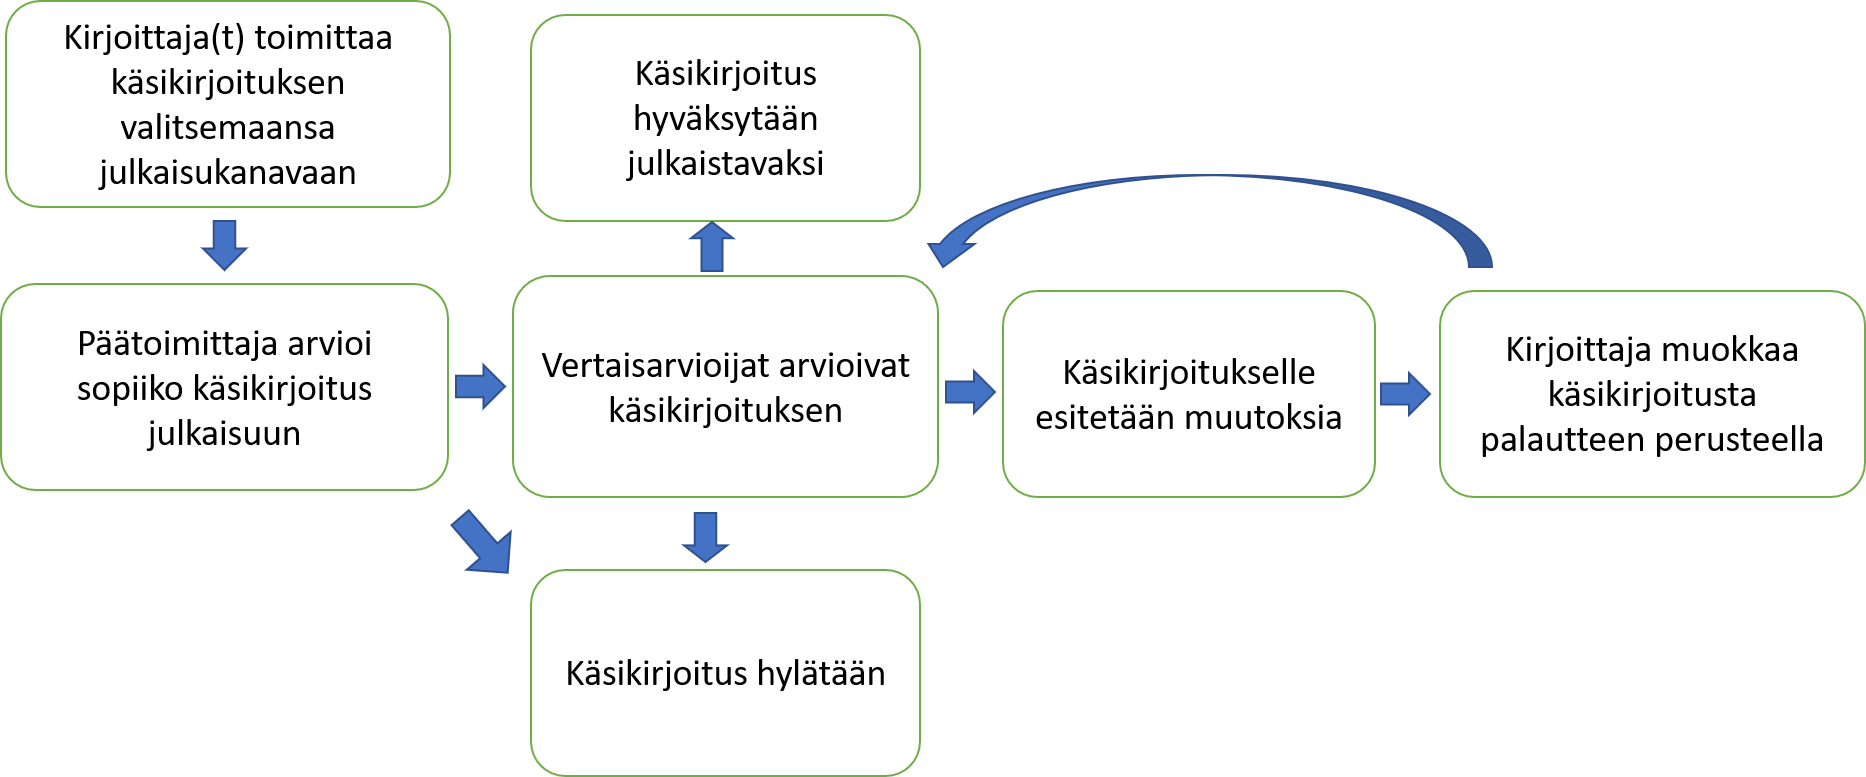 Kuva esittää kaavion, jossa kuvataan julkaisuprosessin eri vaiheita.